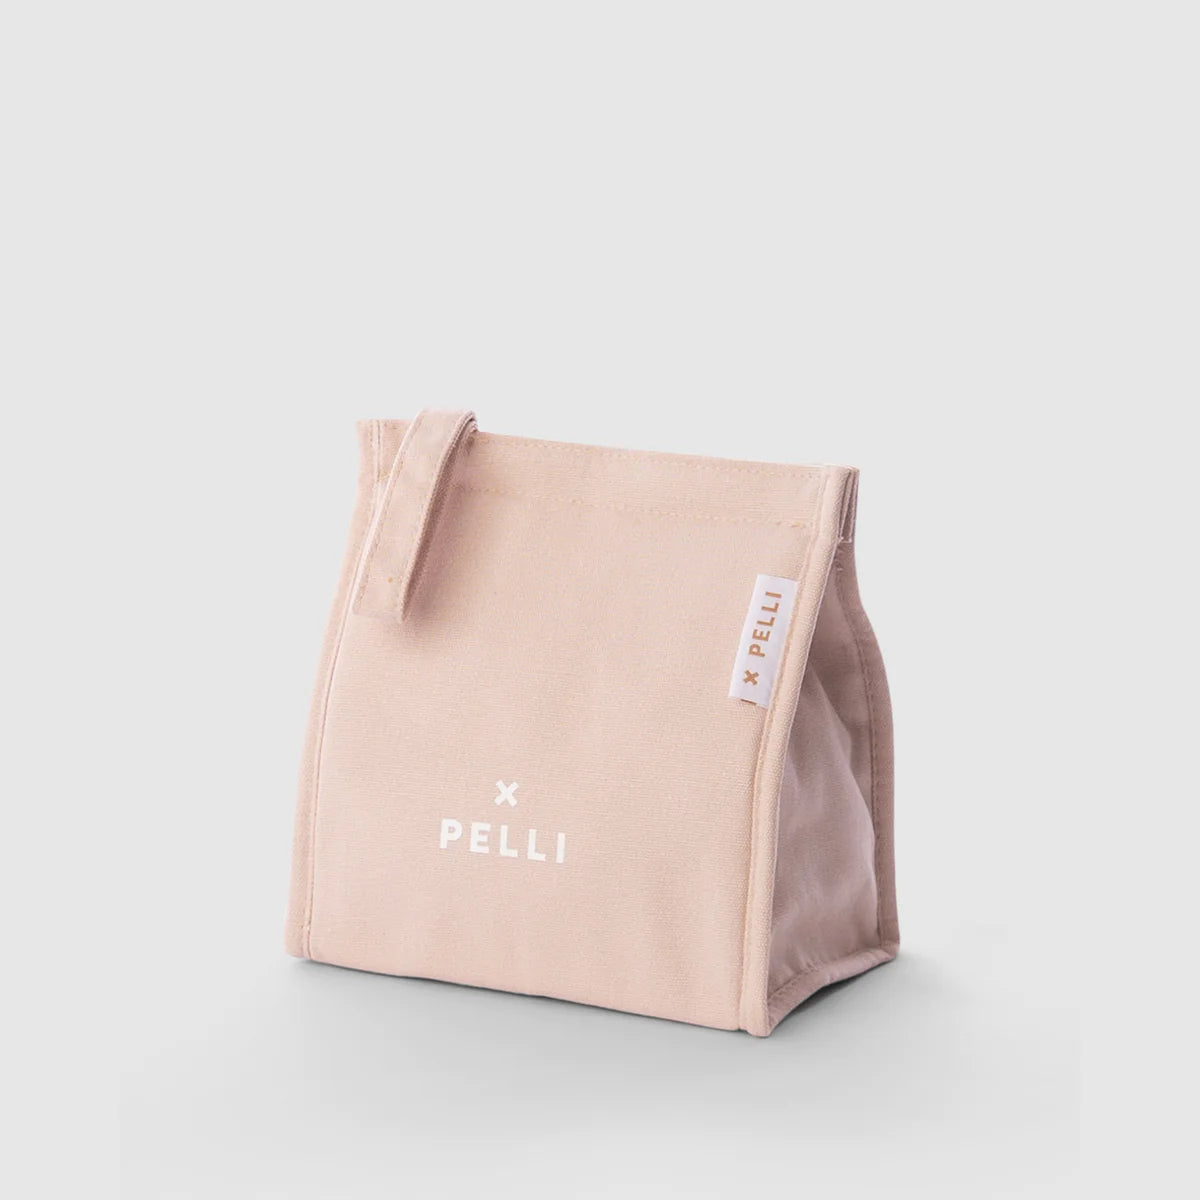 Pelli Mini Break Insulated Lunch Bag